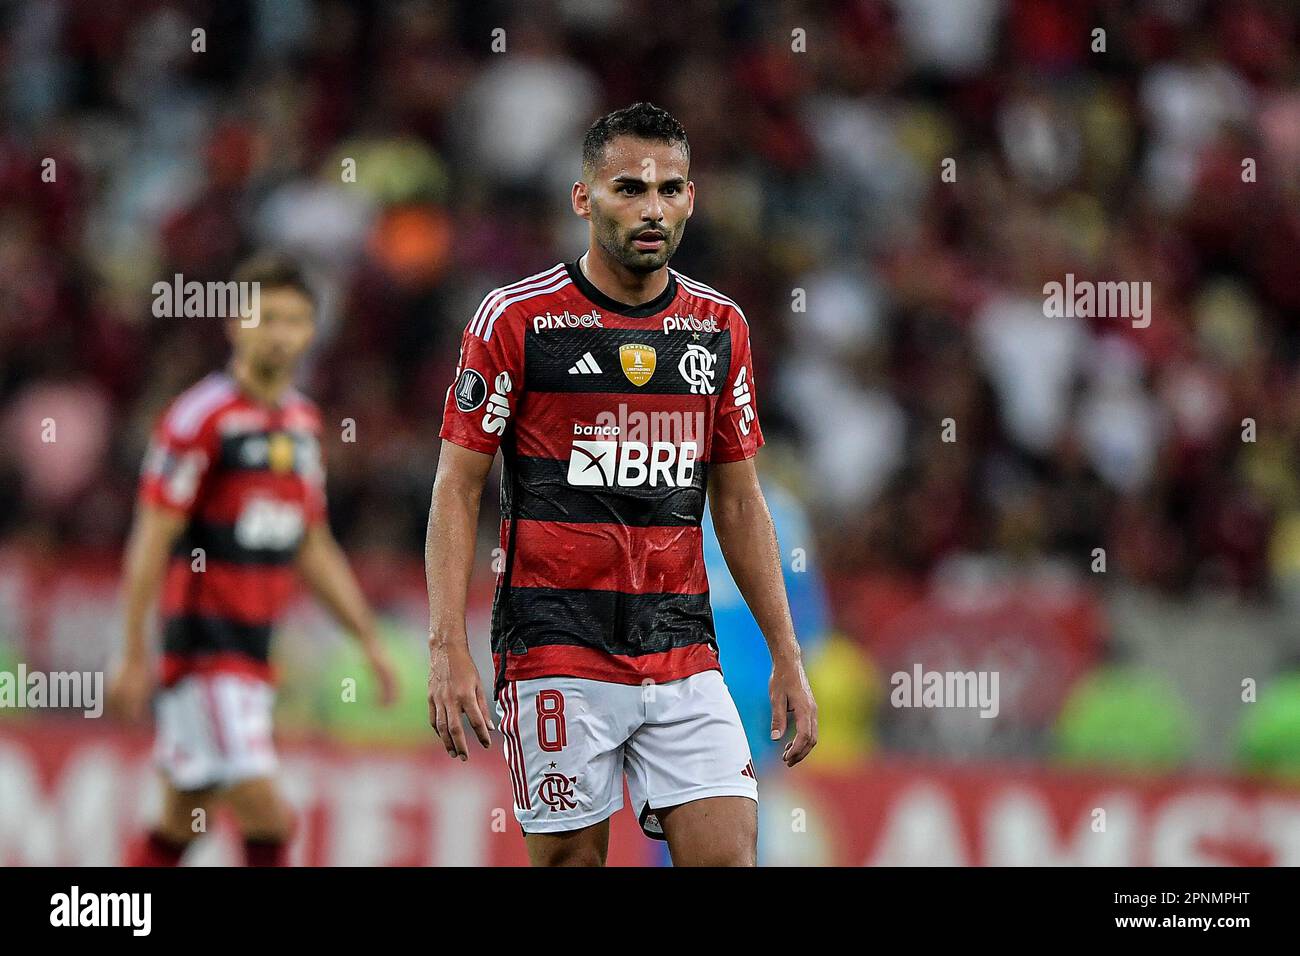 O que falta para o Corinthians anunciar Thiago Maia, do Flamengo